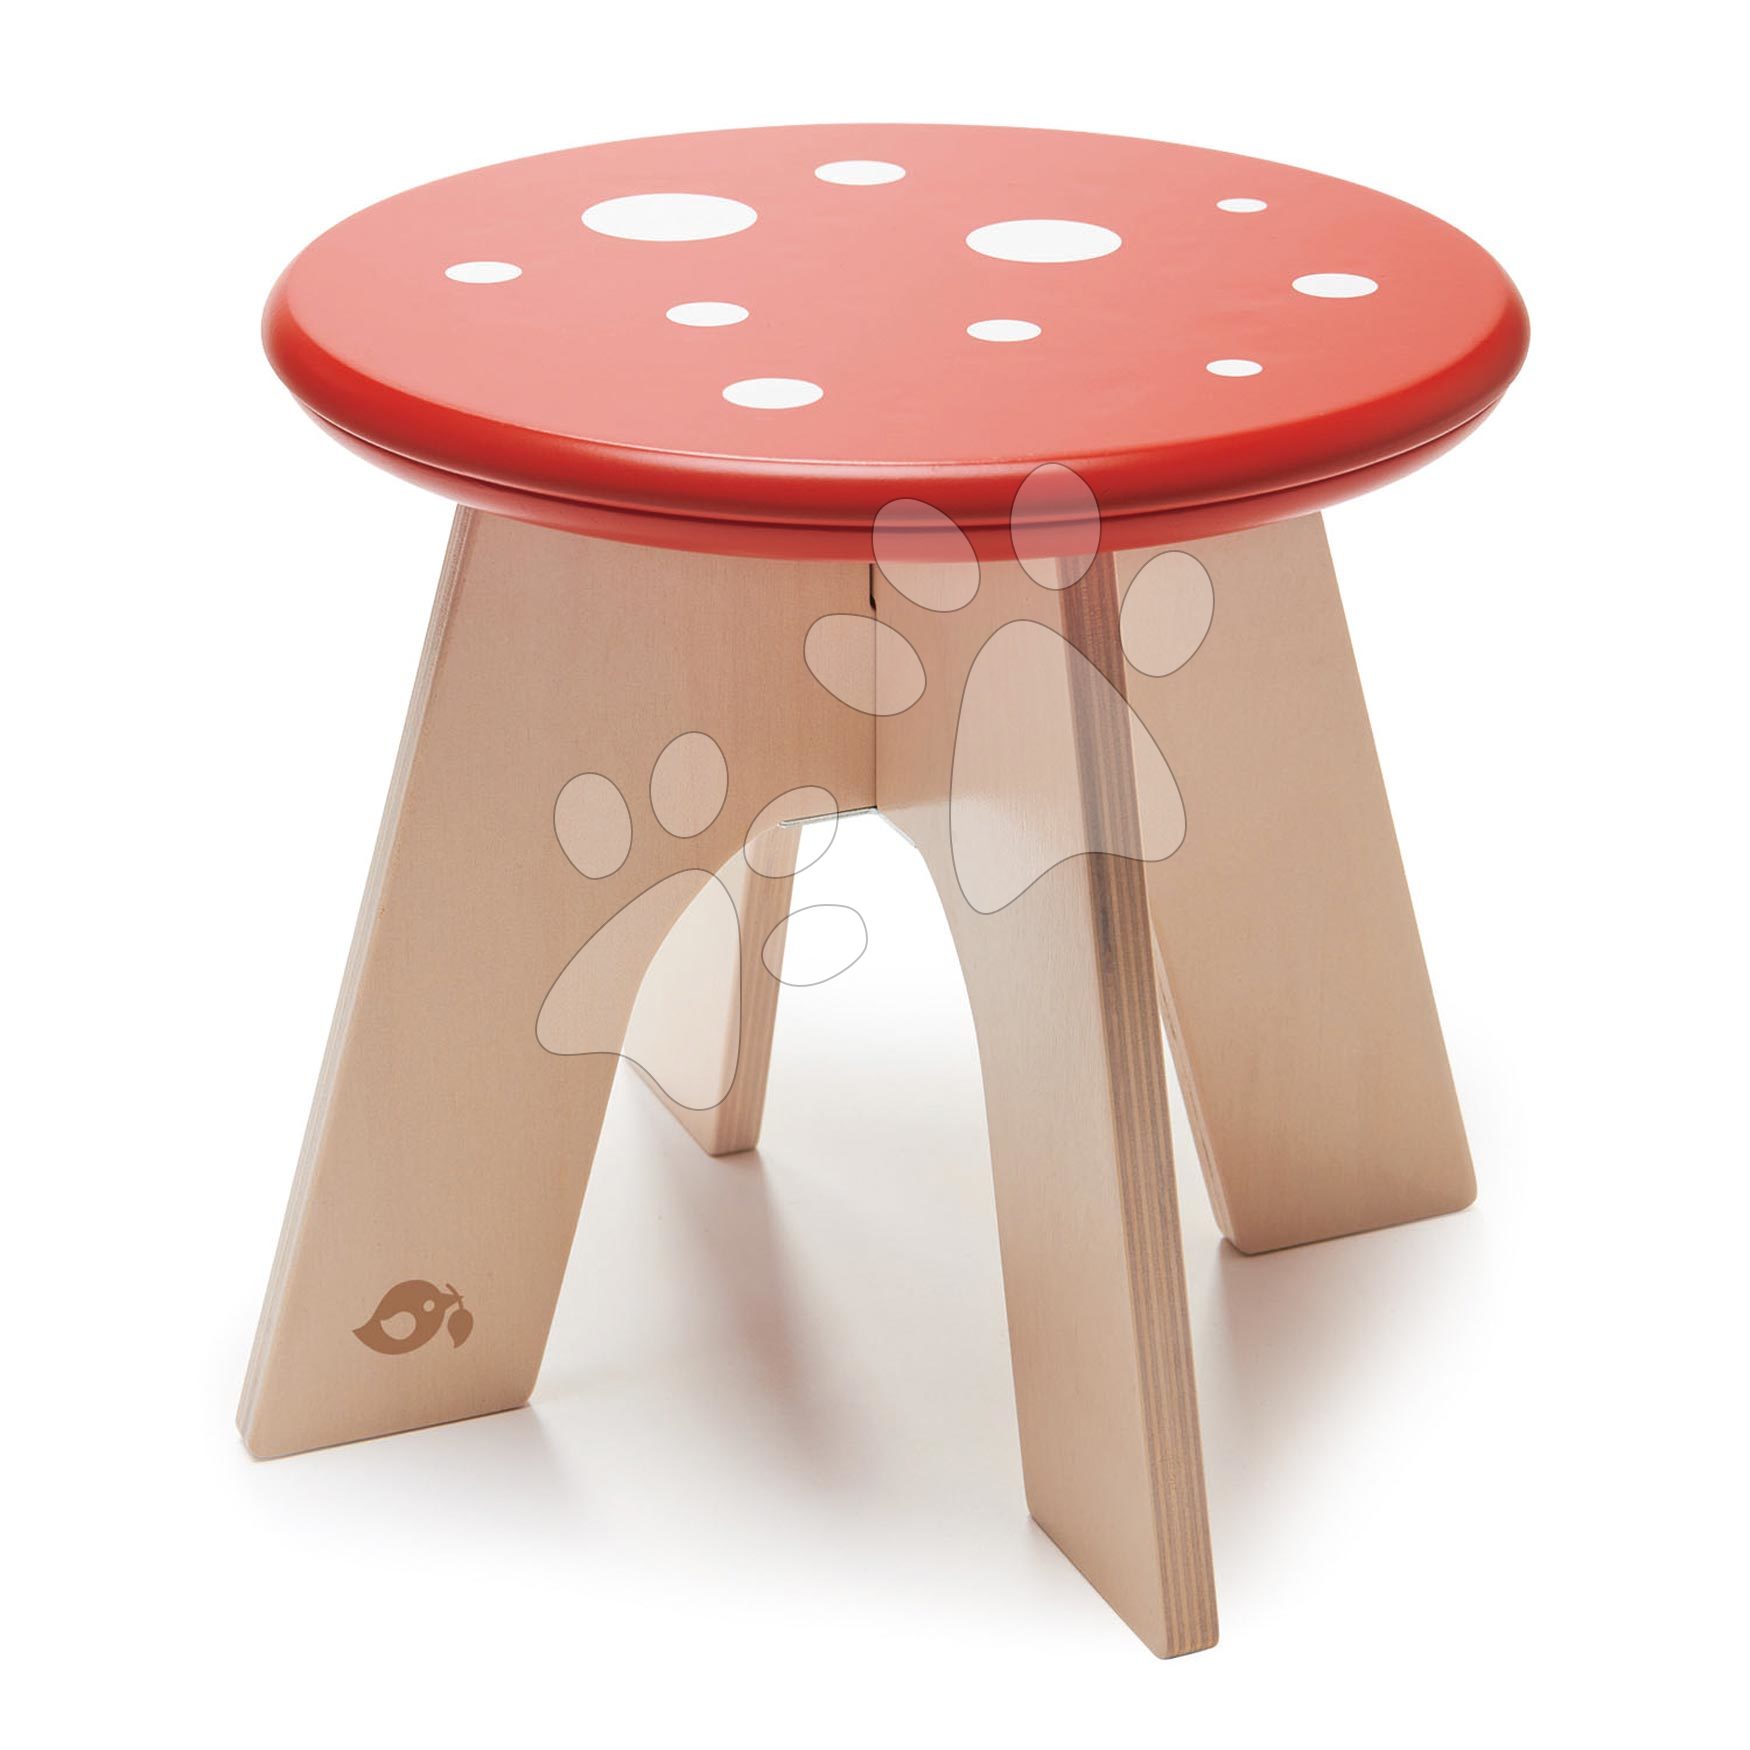 Detský drevený nábytok - Drevená stolička hríbik Toadstool Tender Leaf Toys muchotrávka s červeným bodkovaným sedadlom